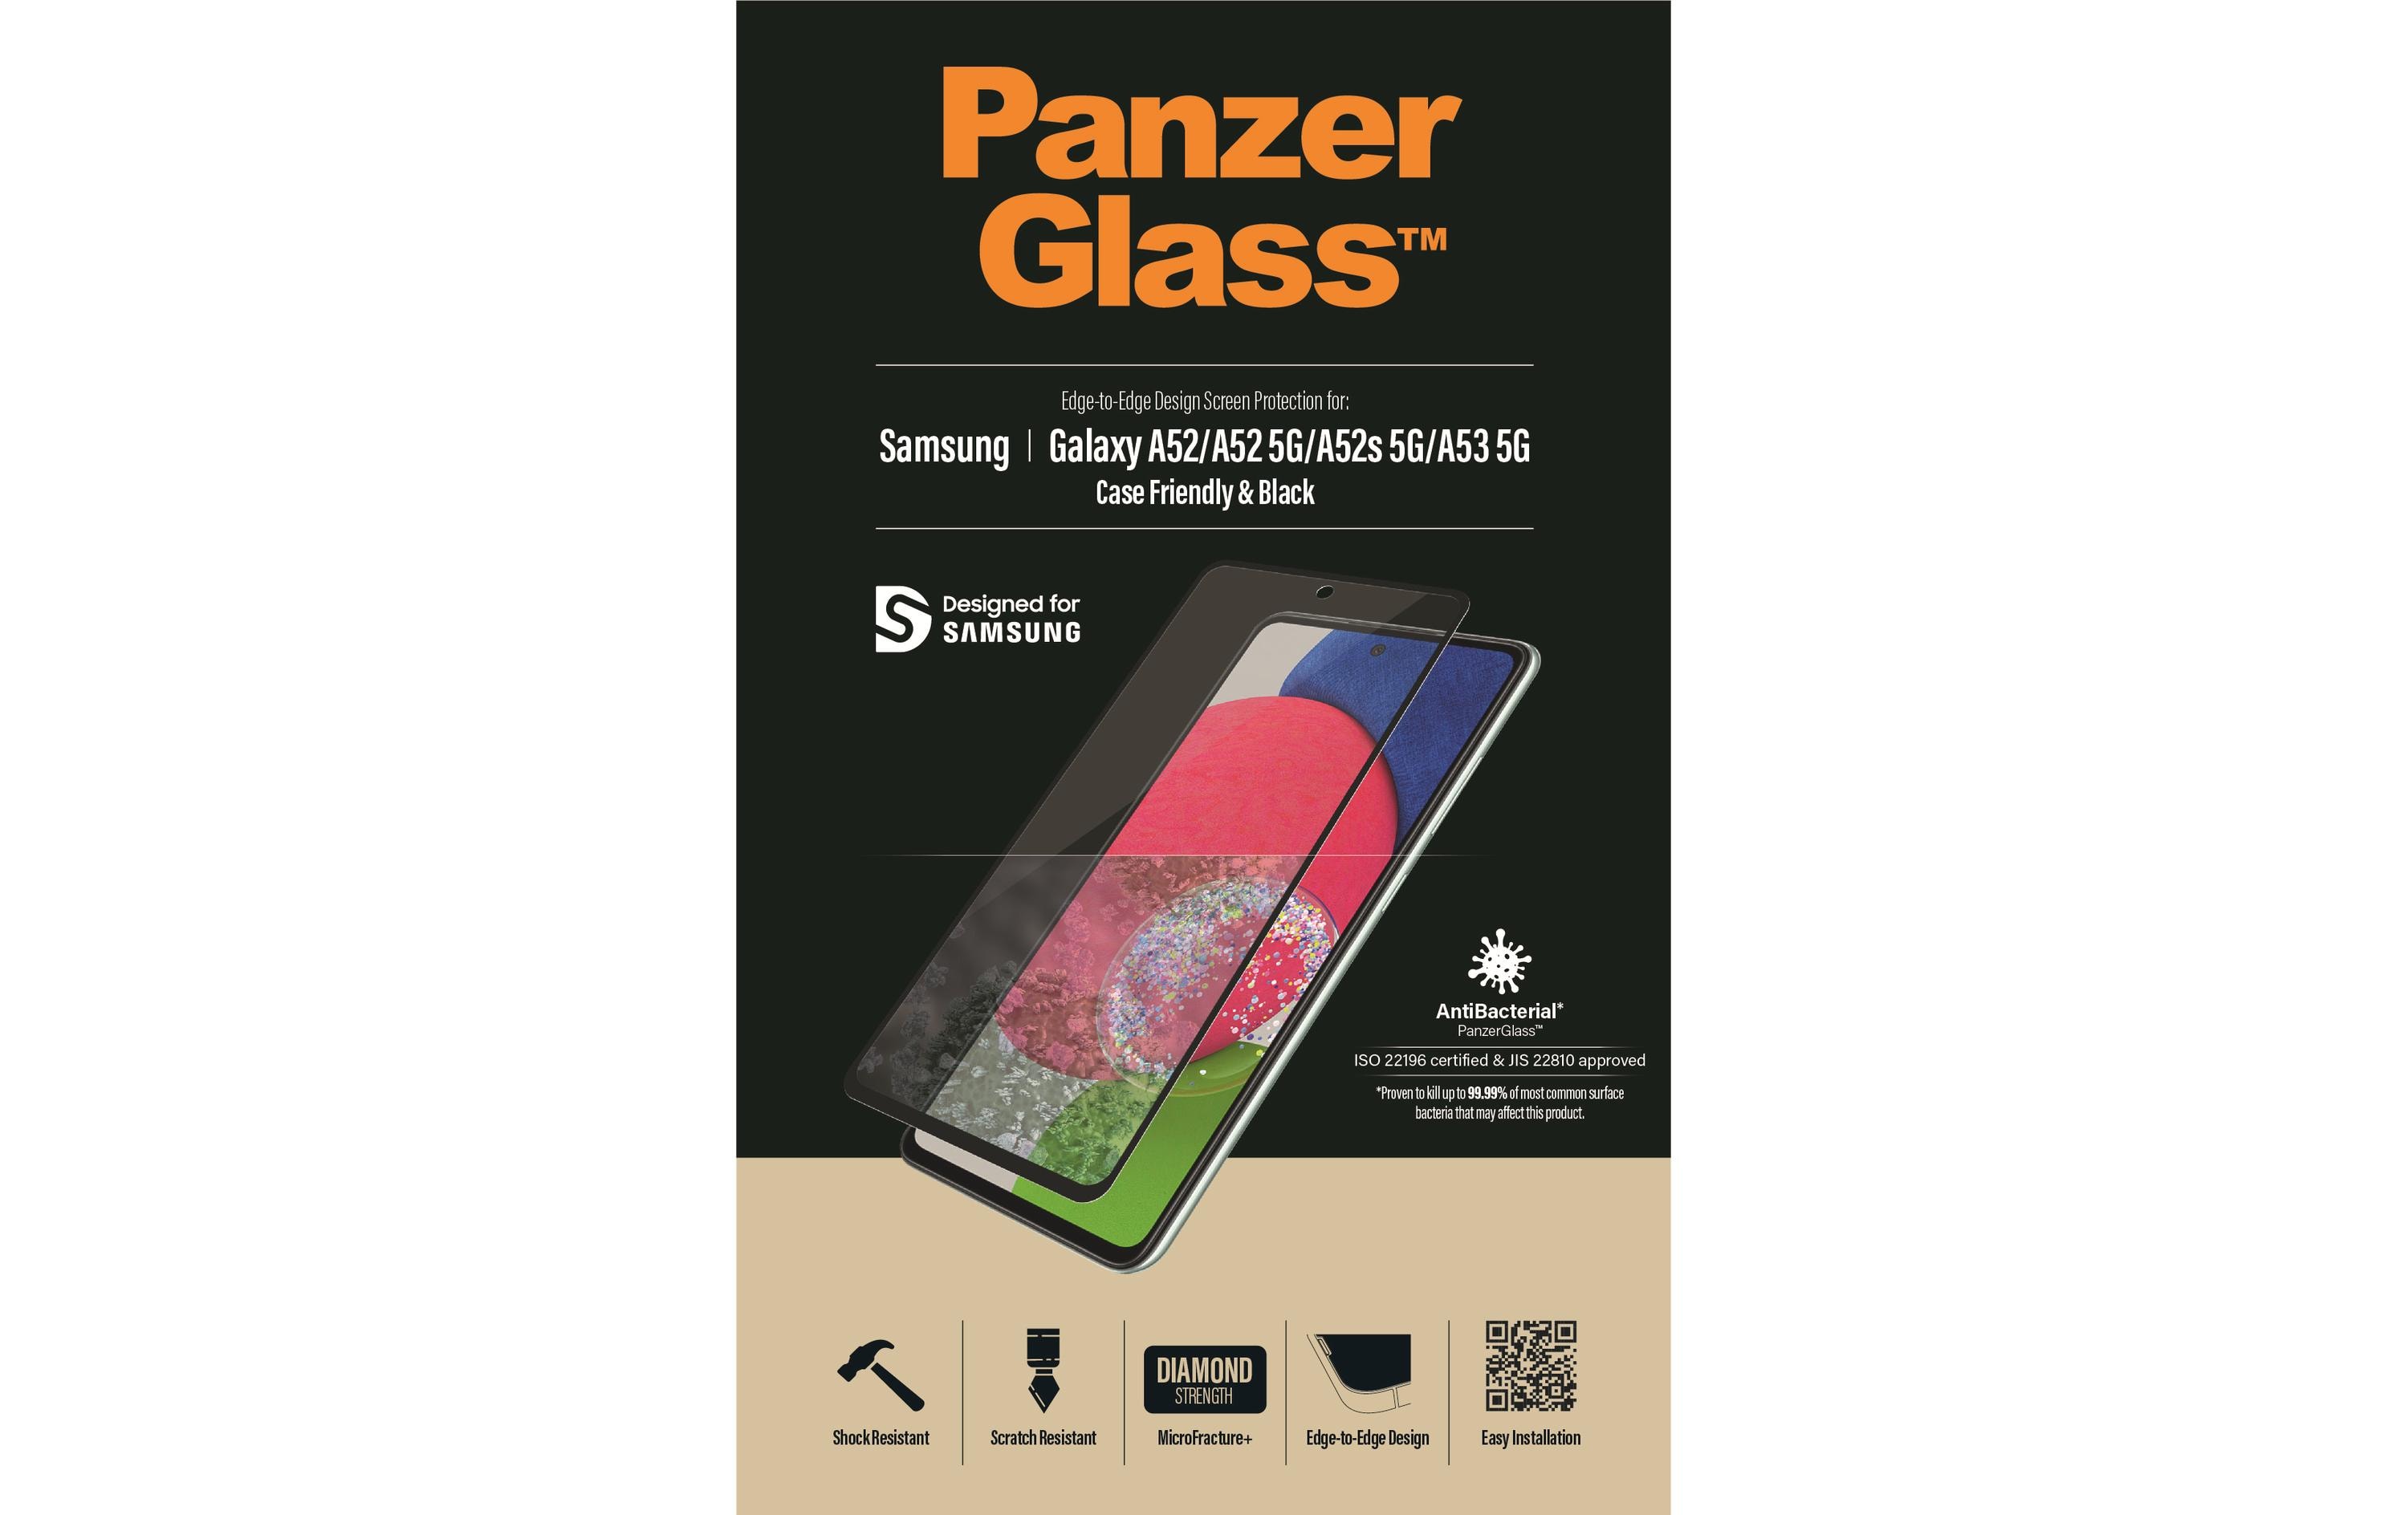 Panzerglass Case Friendly Galaxy A52/A52 5G/A53